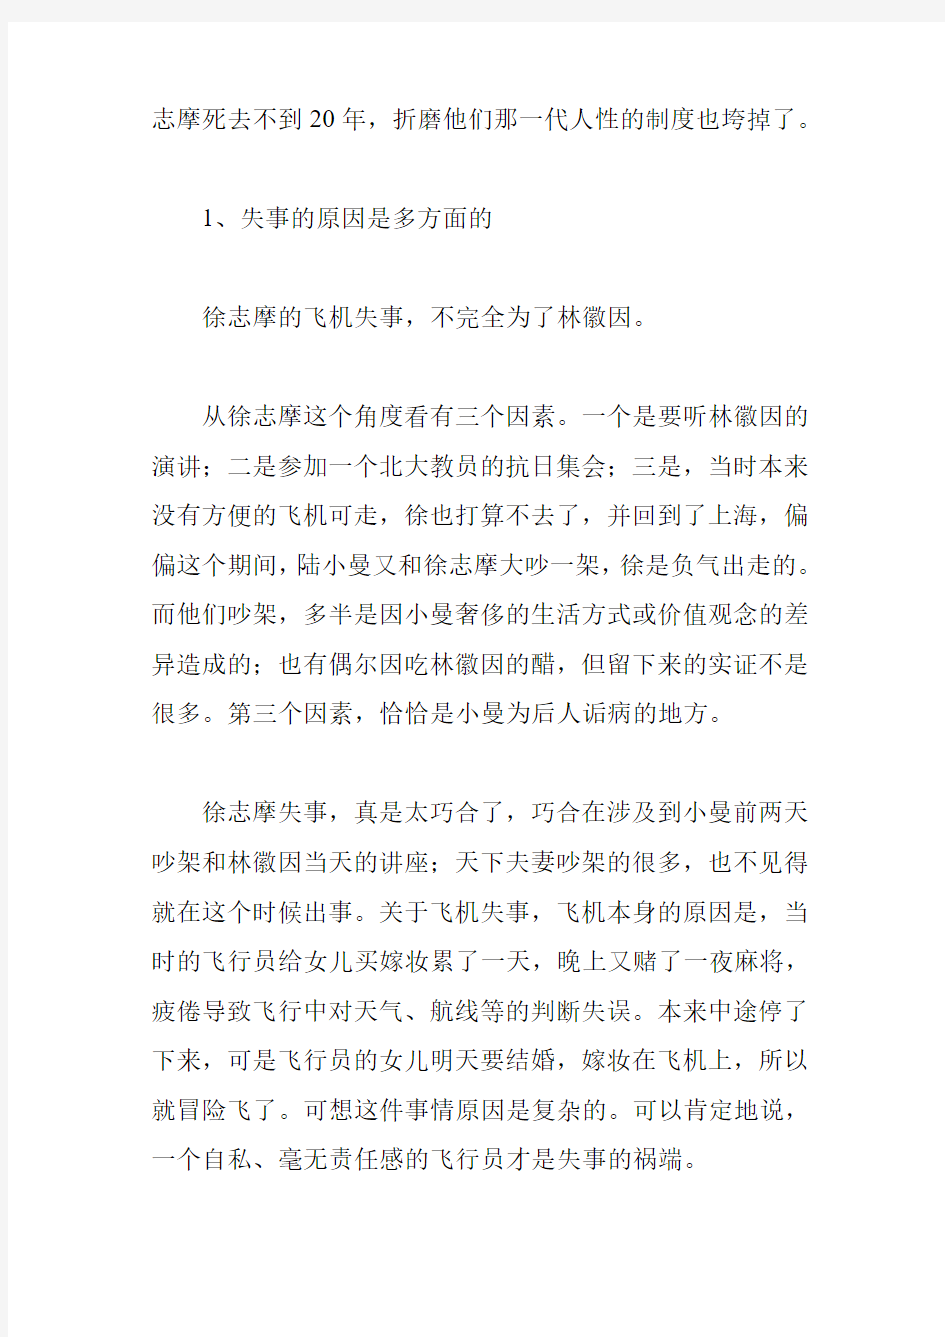 帅好：为什么说金岳霖批评徐志摩是没有依据的